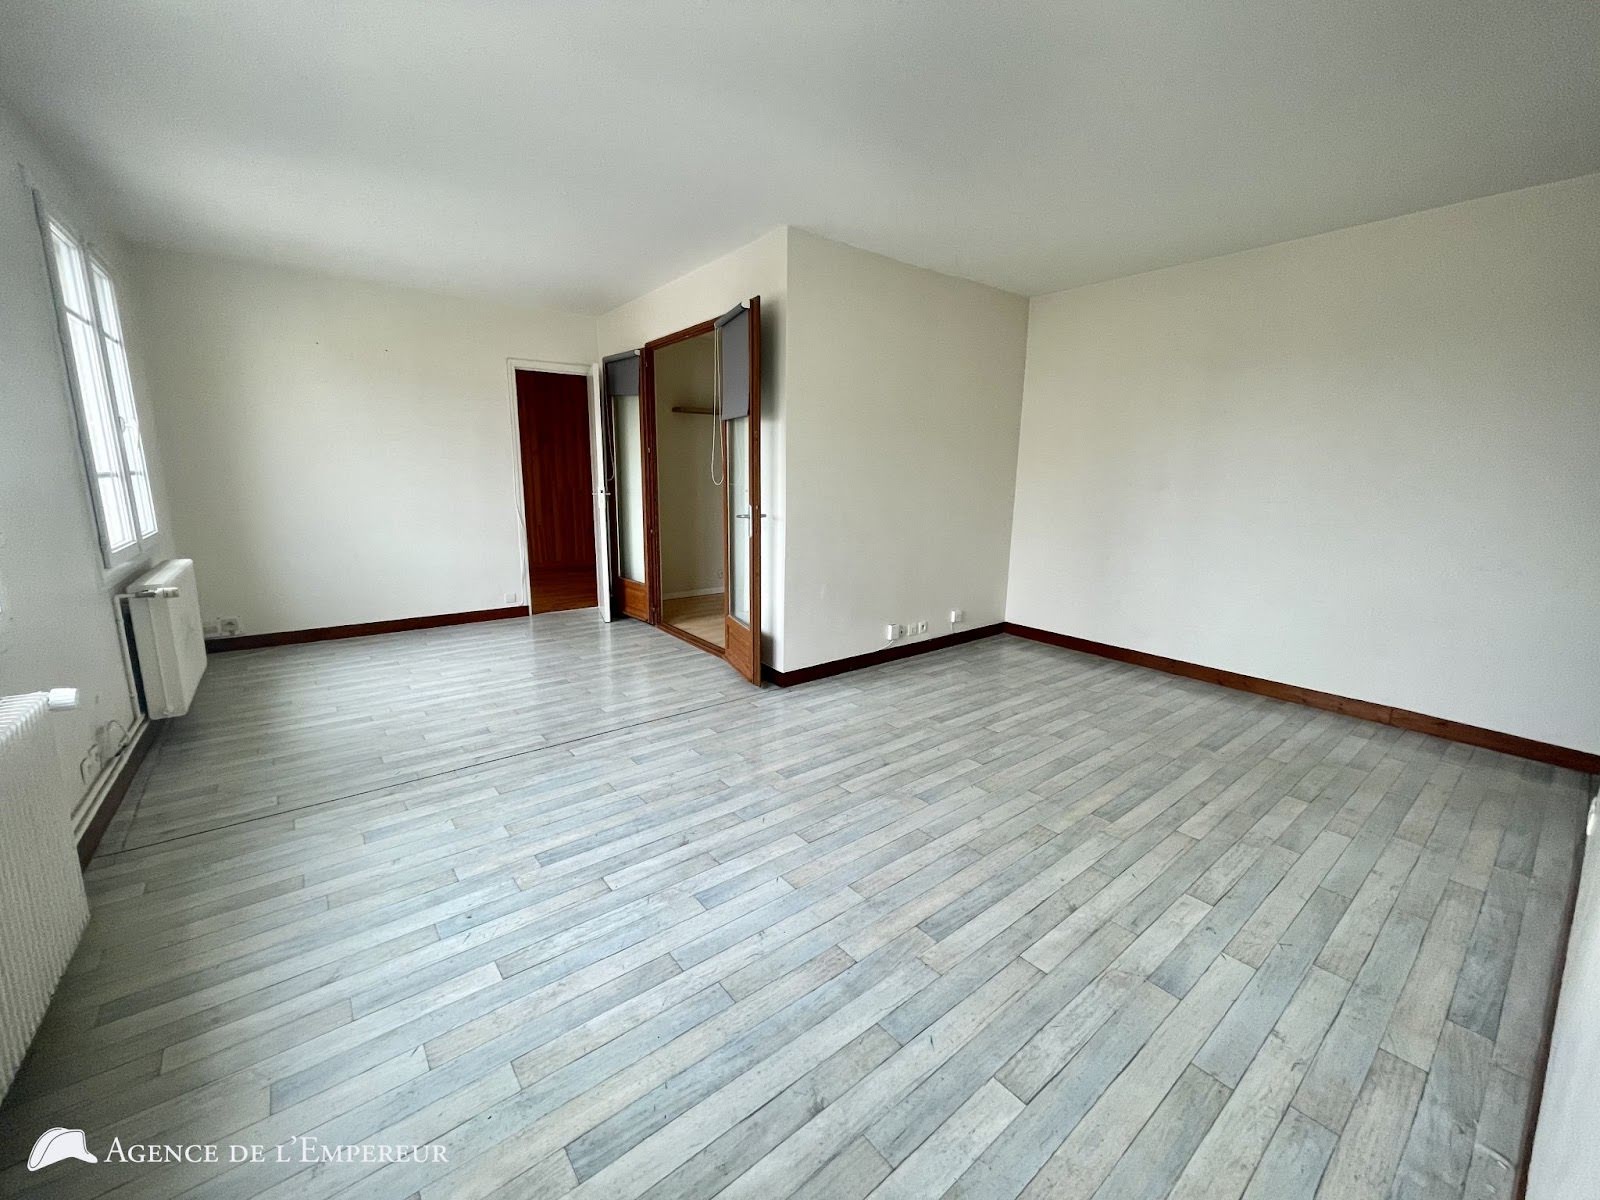 Location appartement 3 pièces 54,84 m2